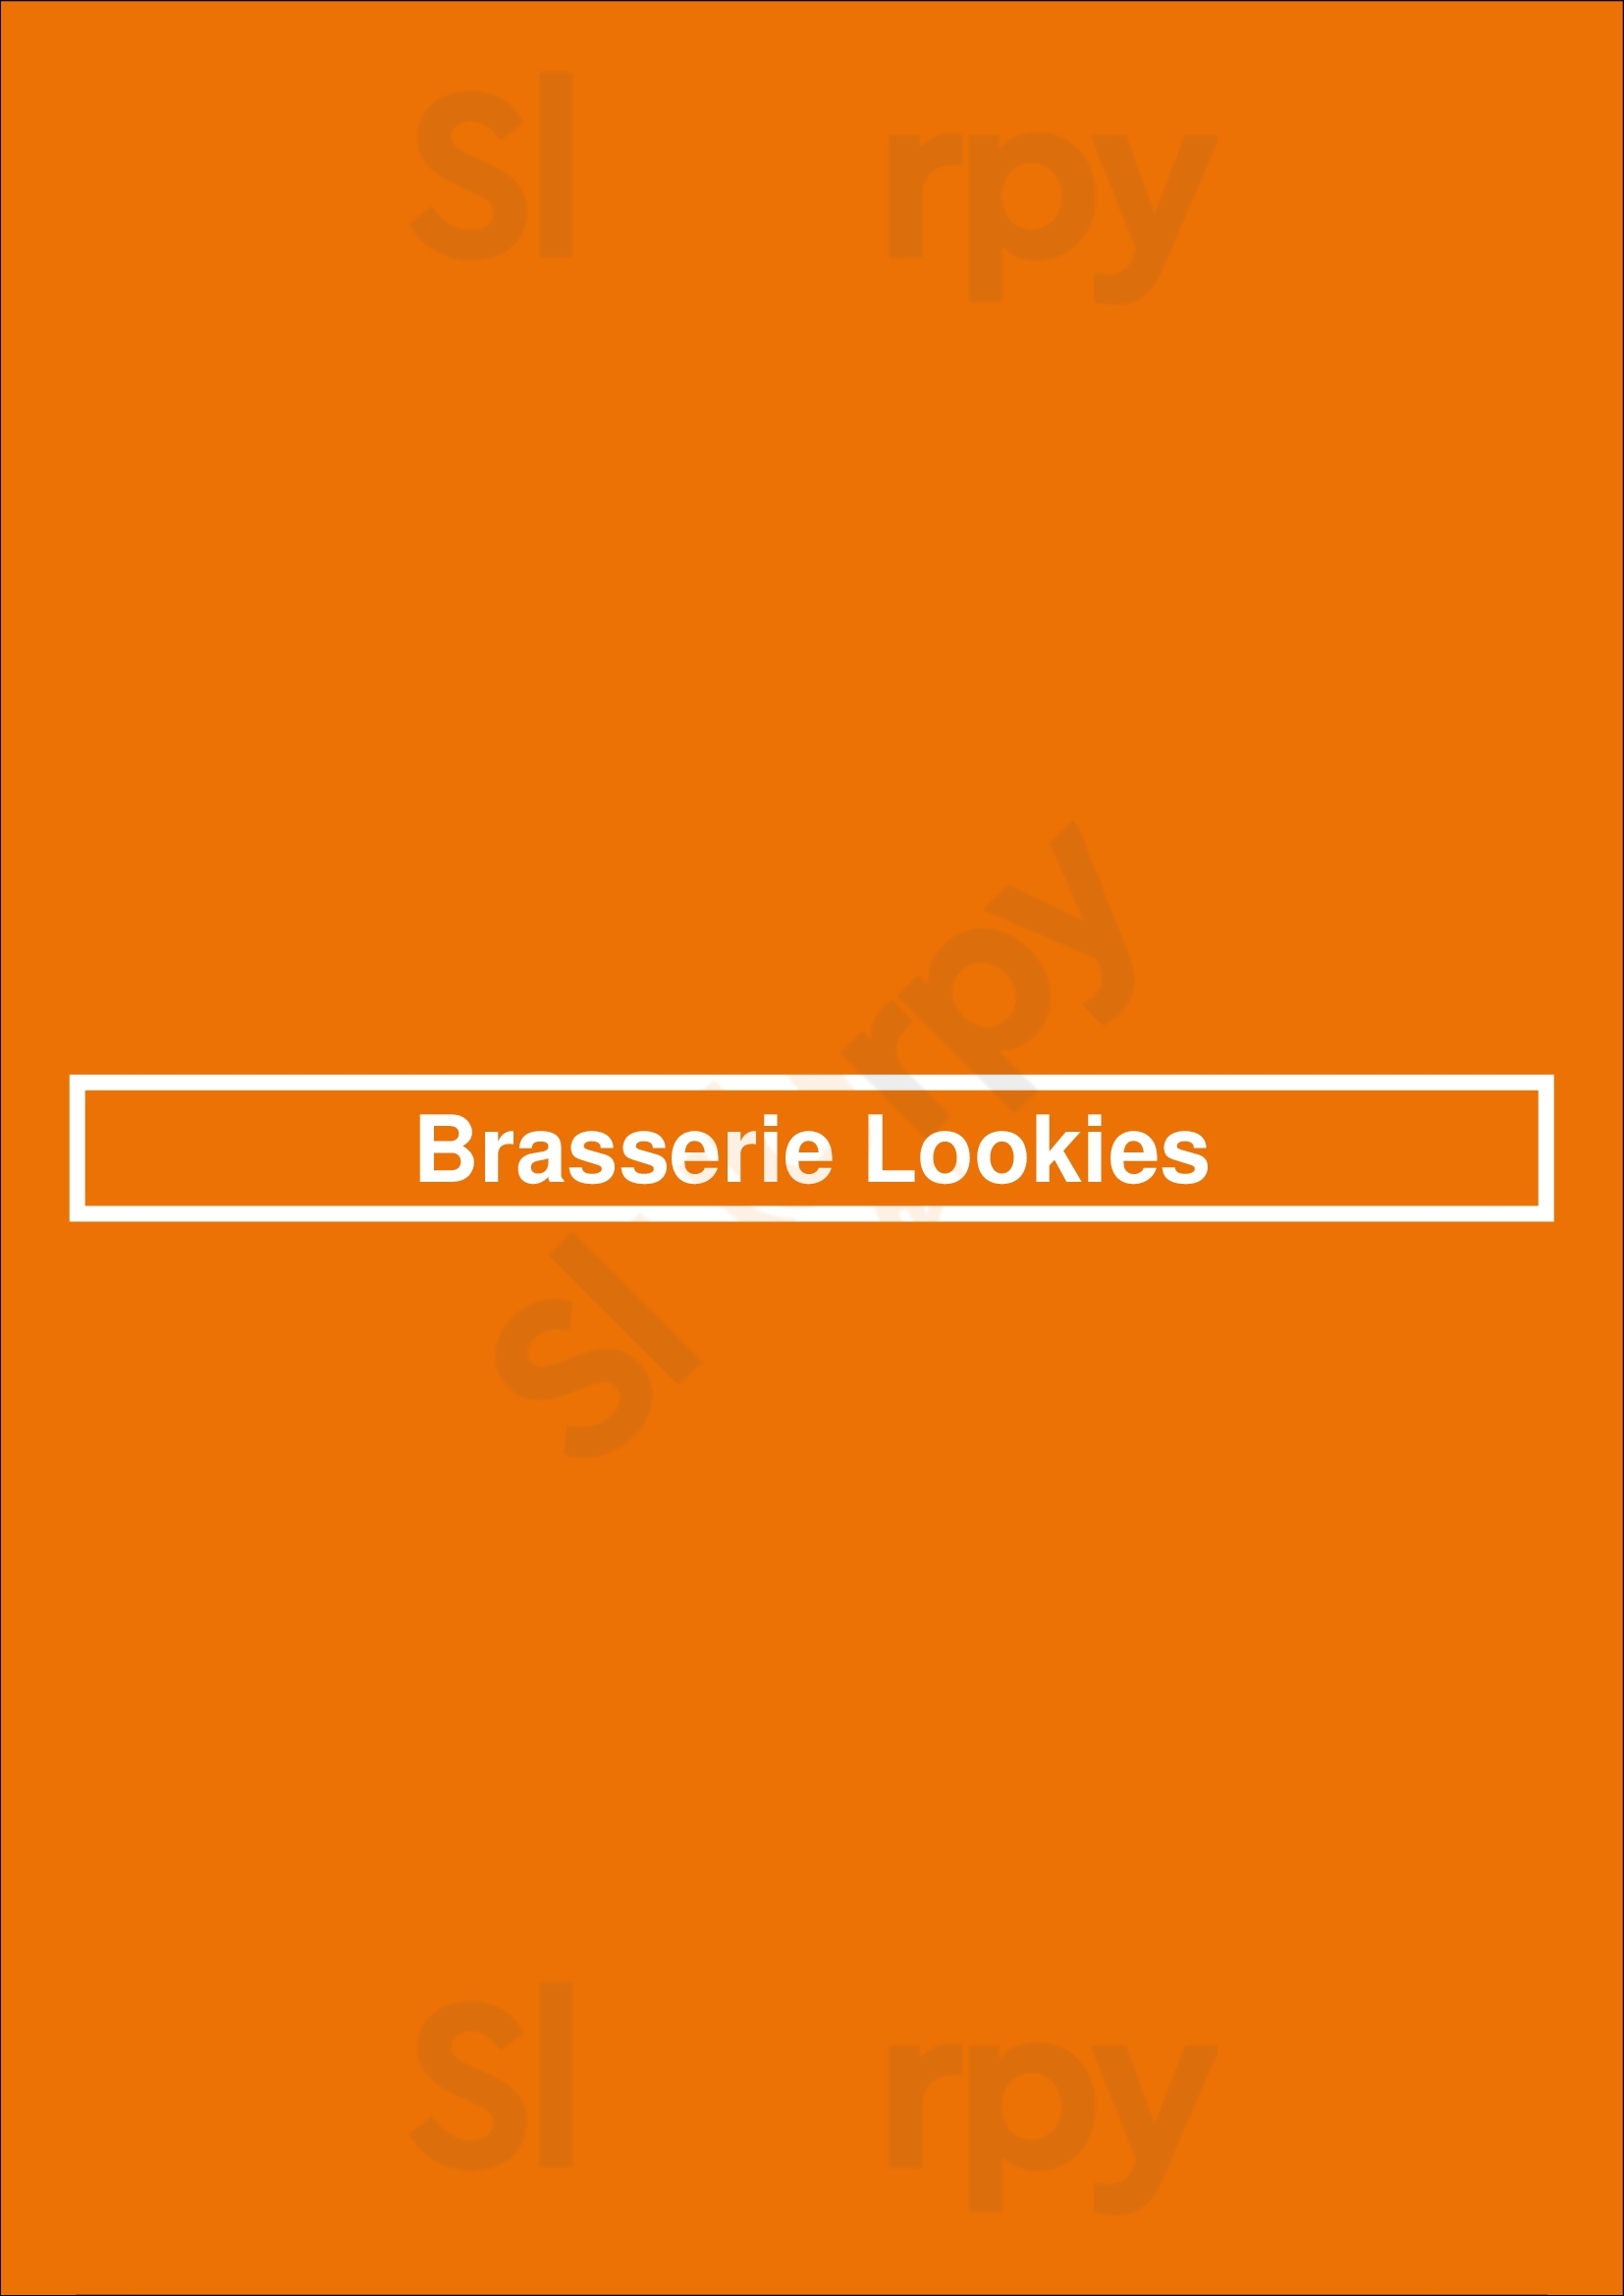 Brasserie Lookies Rotterdam Menu - 1